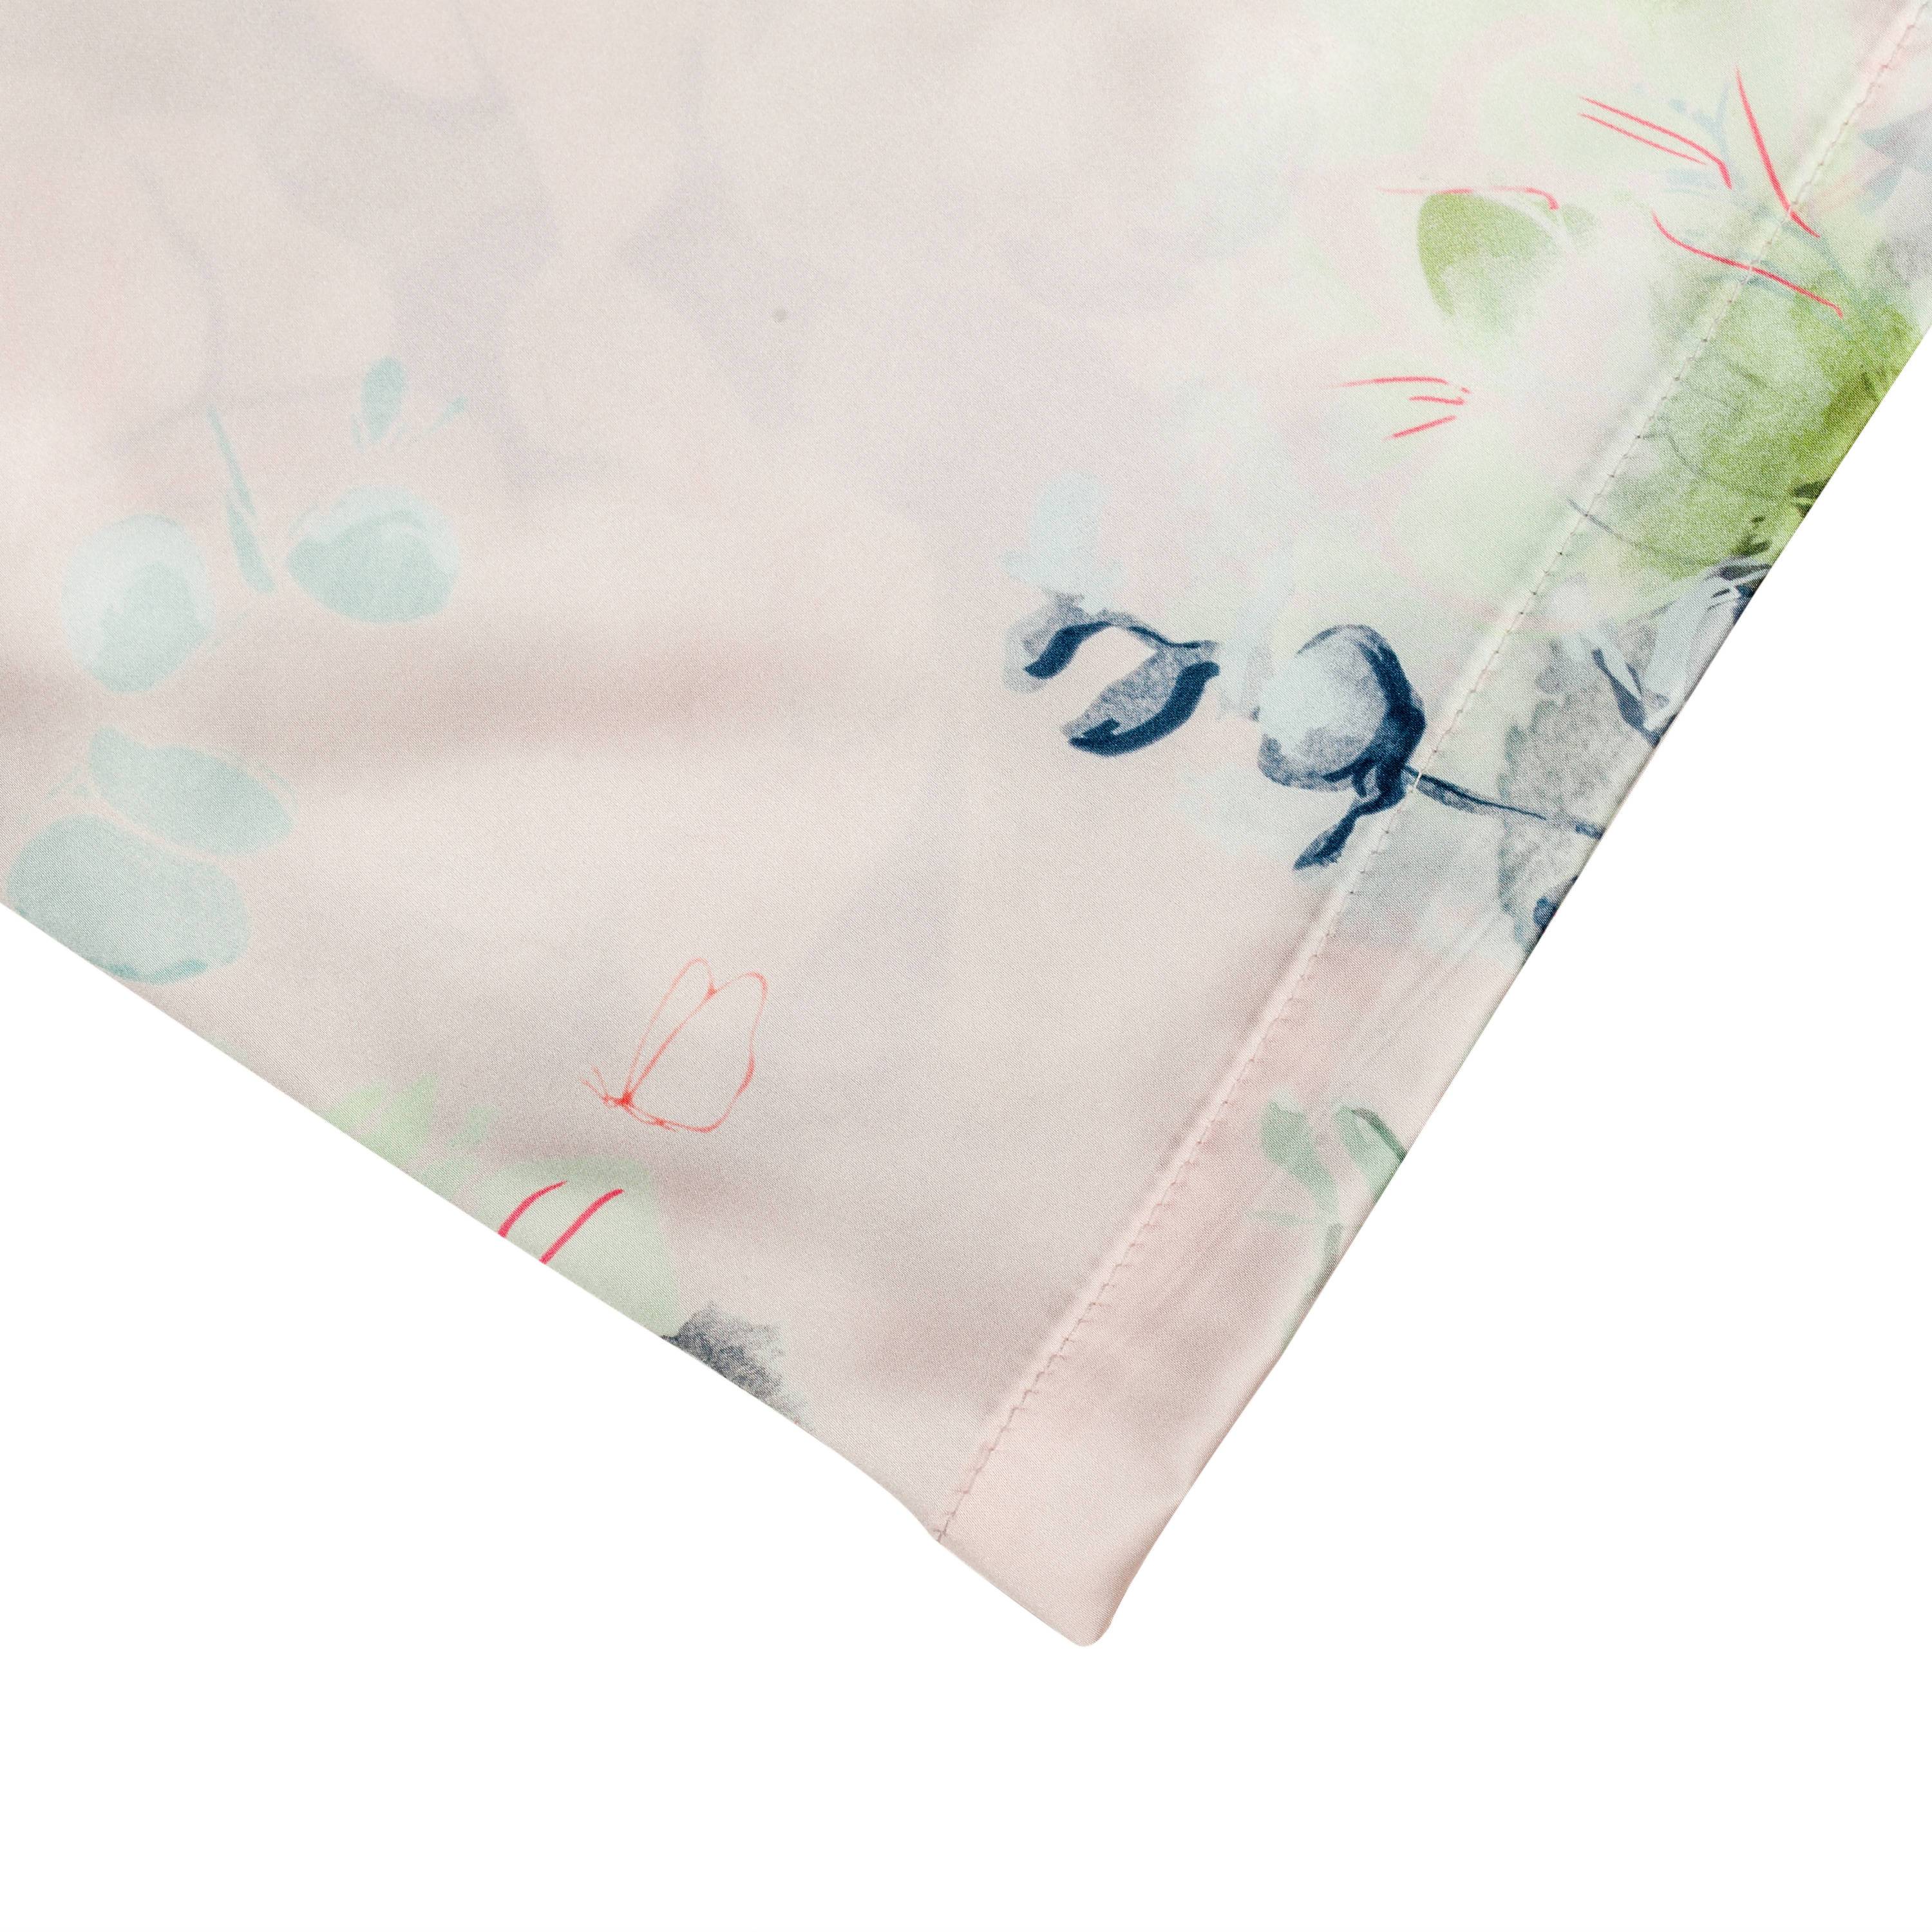 Amaryllis Kimono Robe (Ankle) - Sleepwear for Women - The Mariposa Collection - Naiise